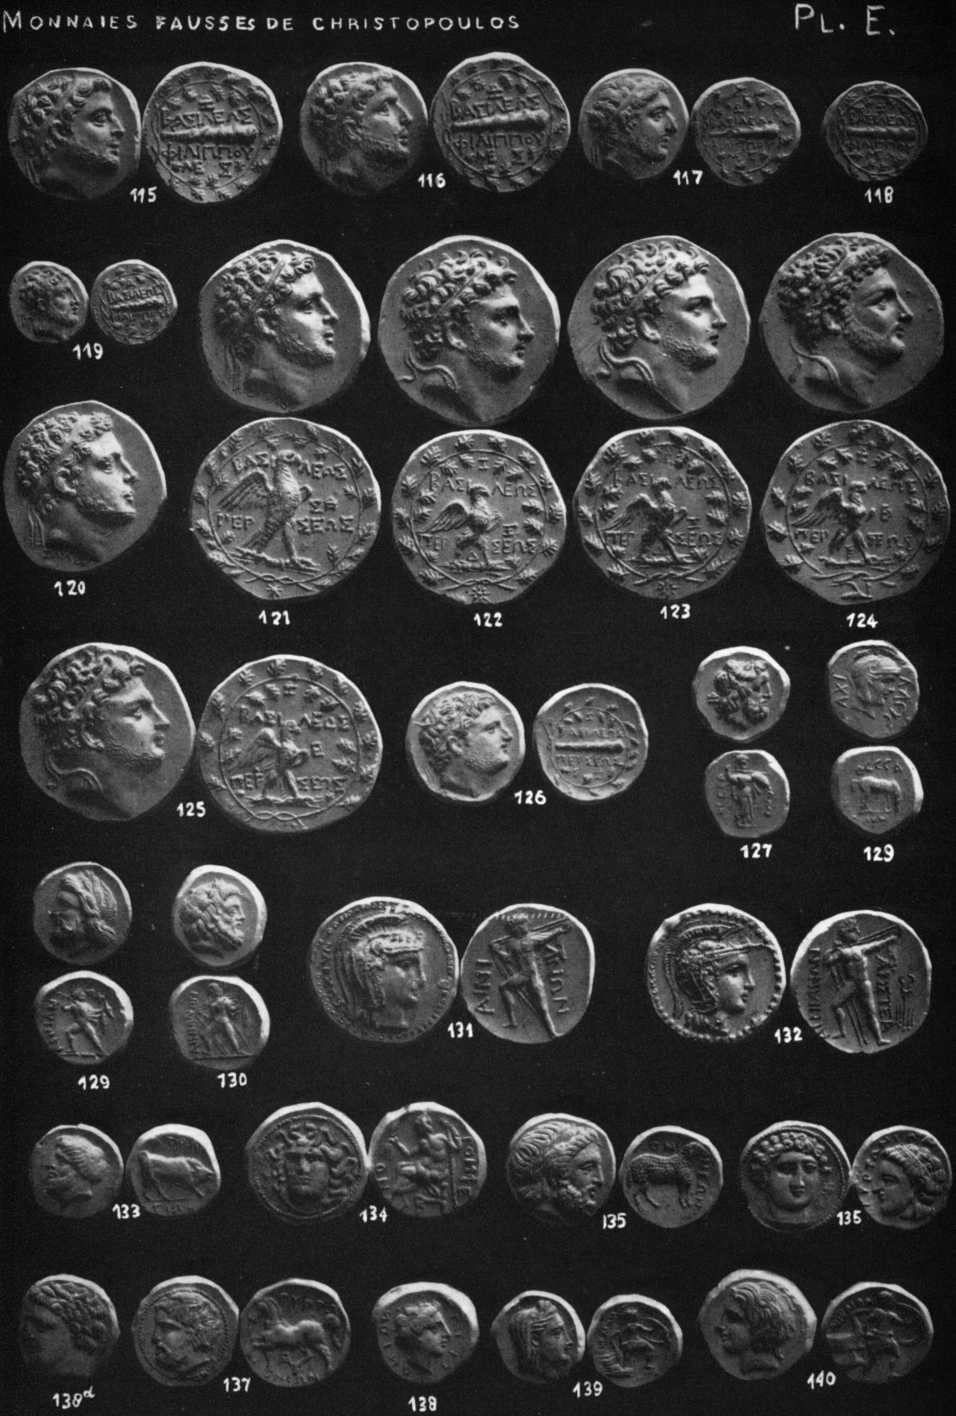 Plate E of false coins